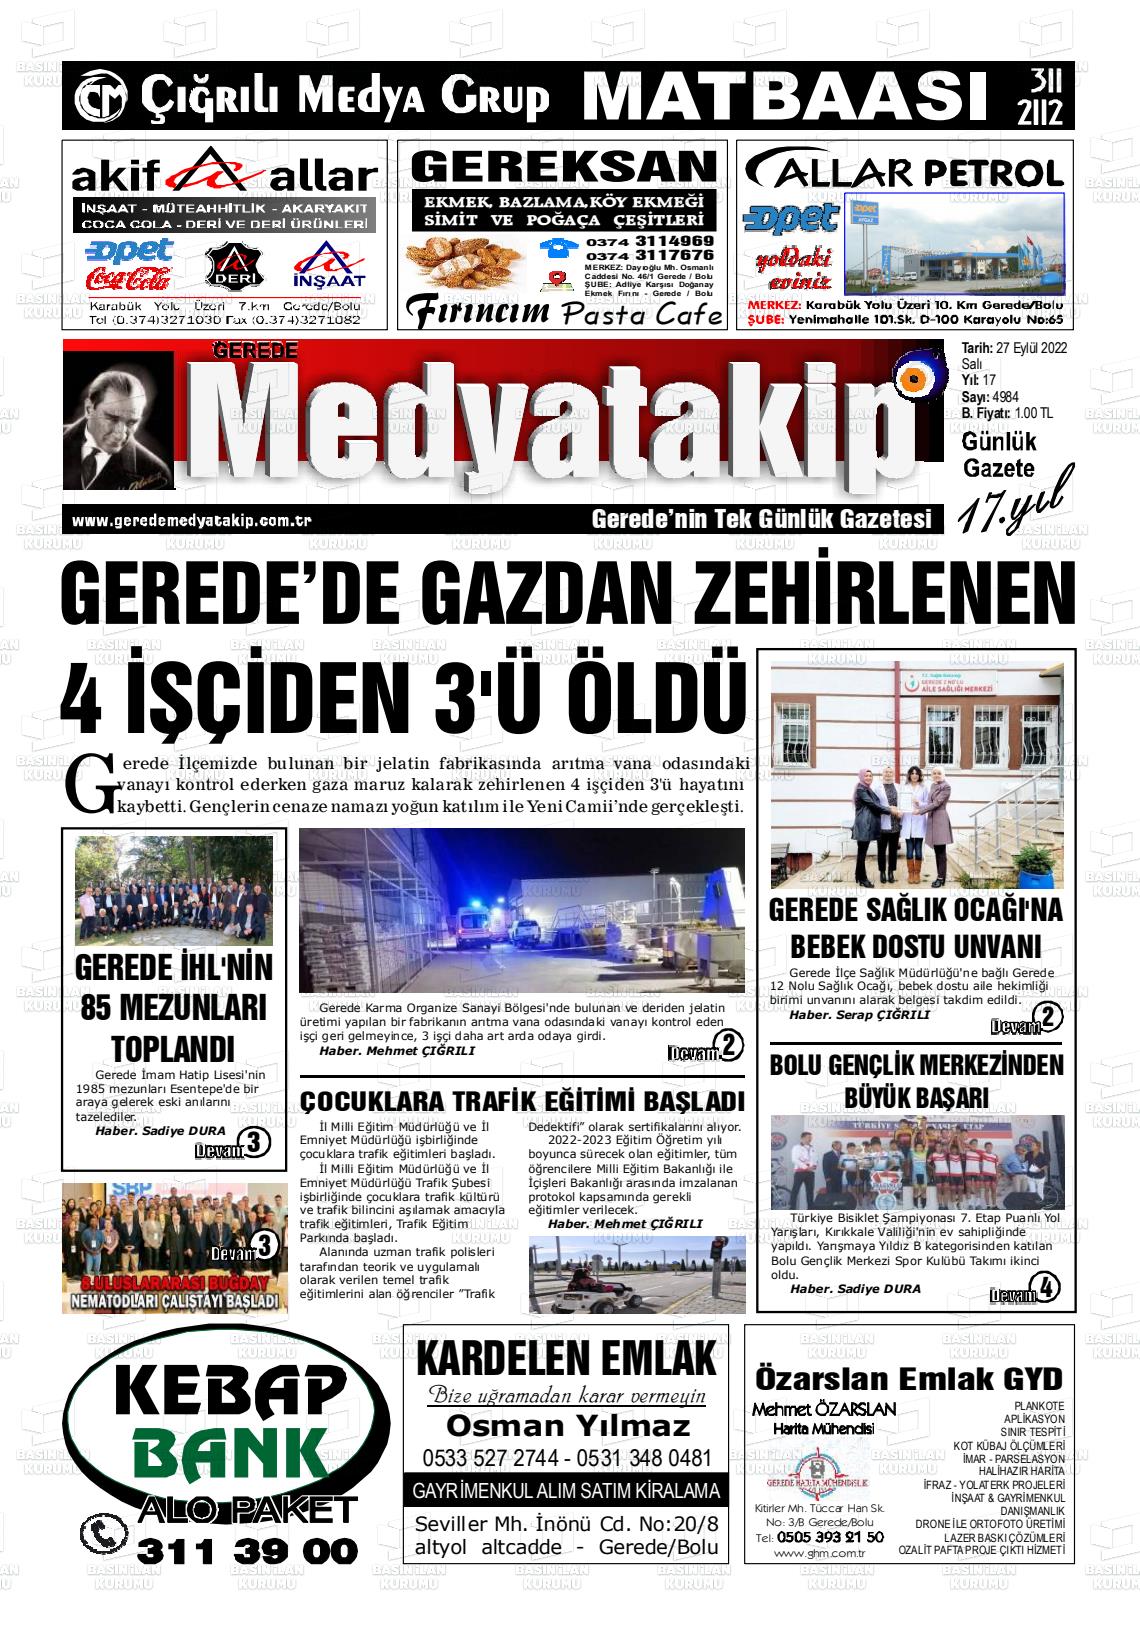 27 Eylül 2022 Gerede Medya Takip Gazete Manşeti